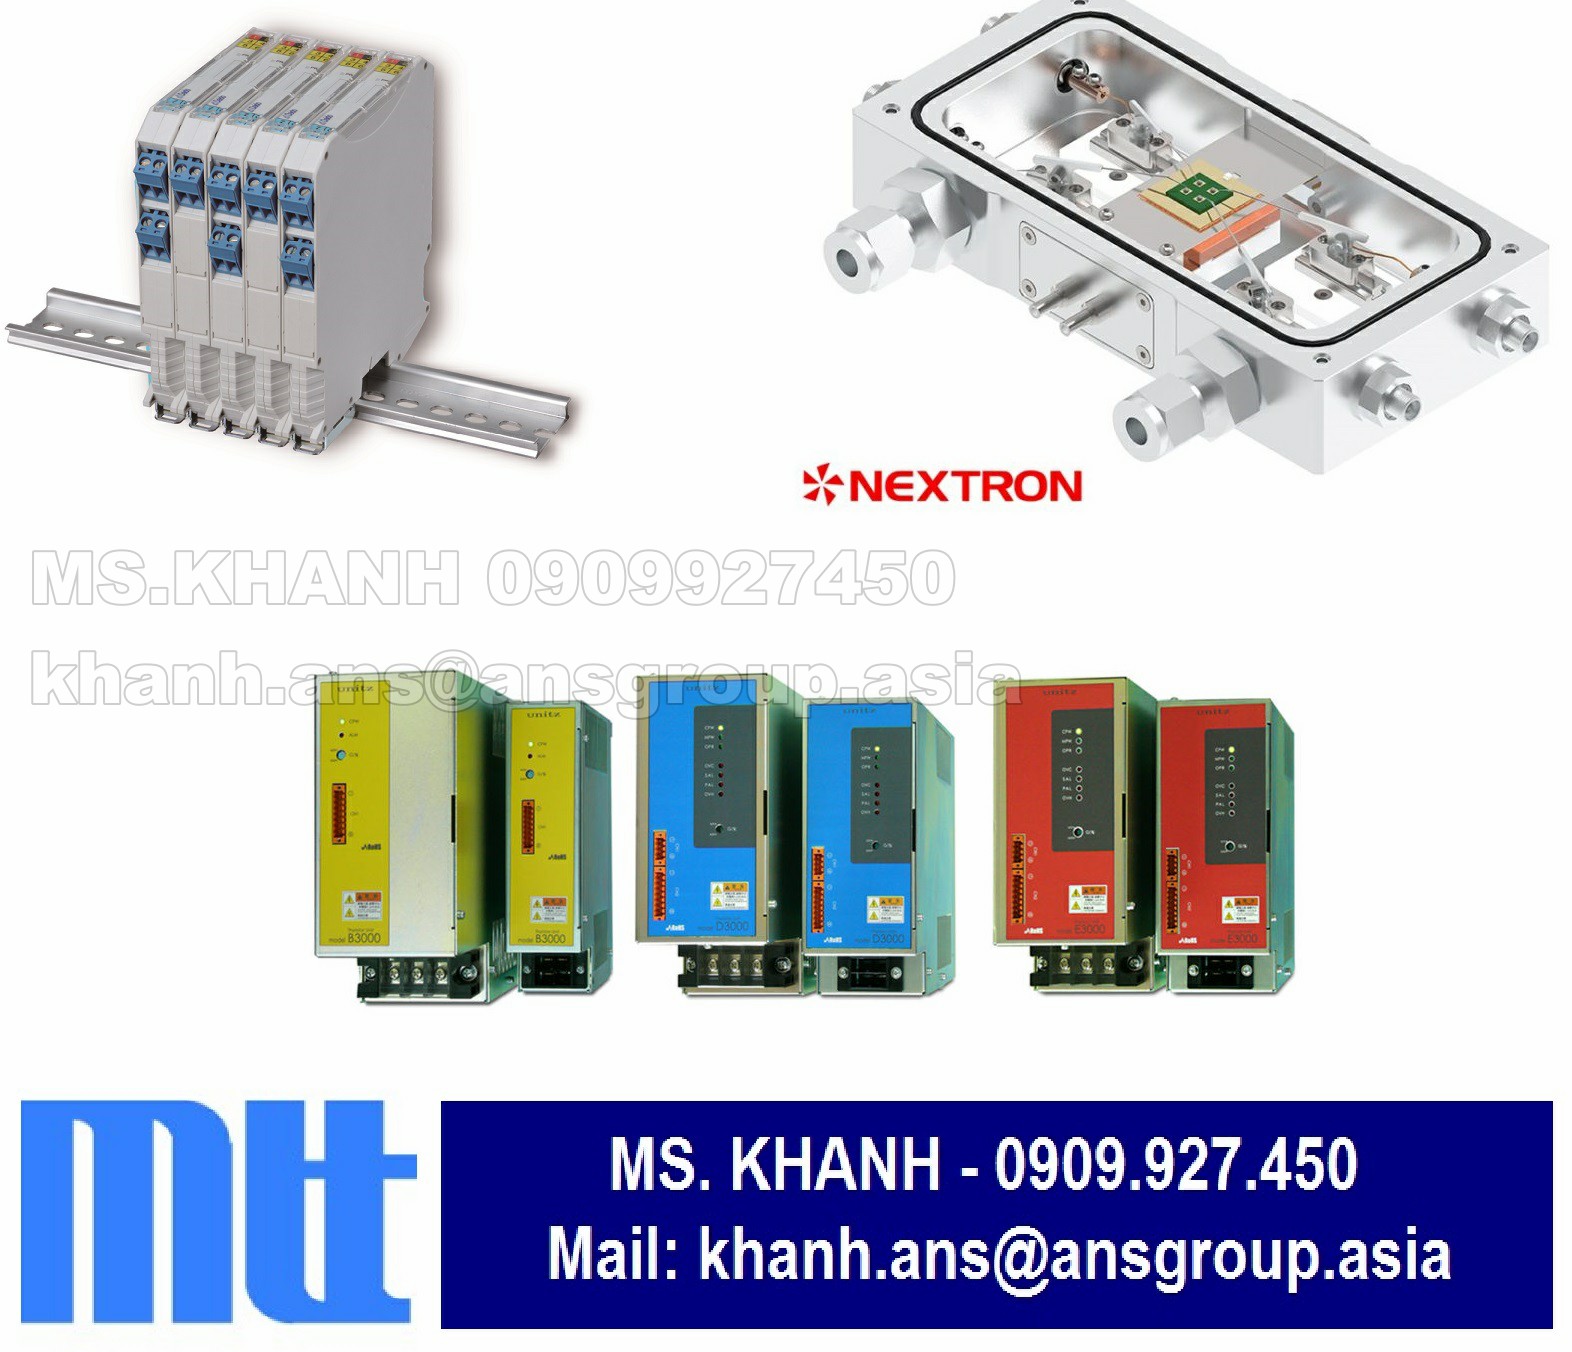 thiet-bi-slim-plug-in-millivolt-isolator-ms3703-d-04-k-jp-mtt-instruments-vietnam.png